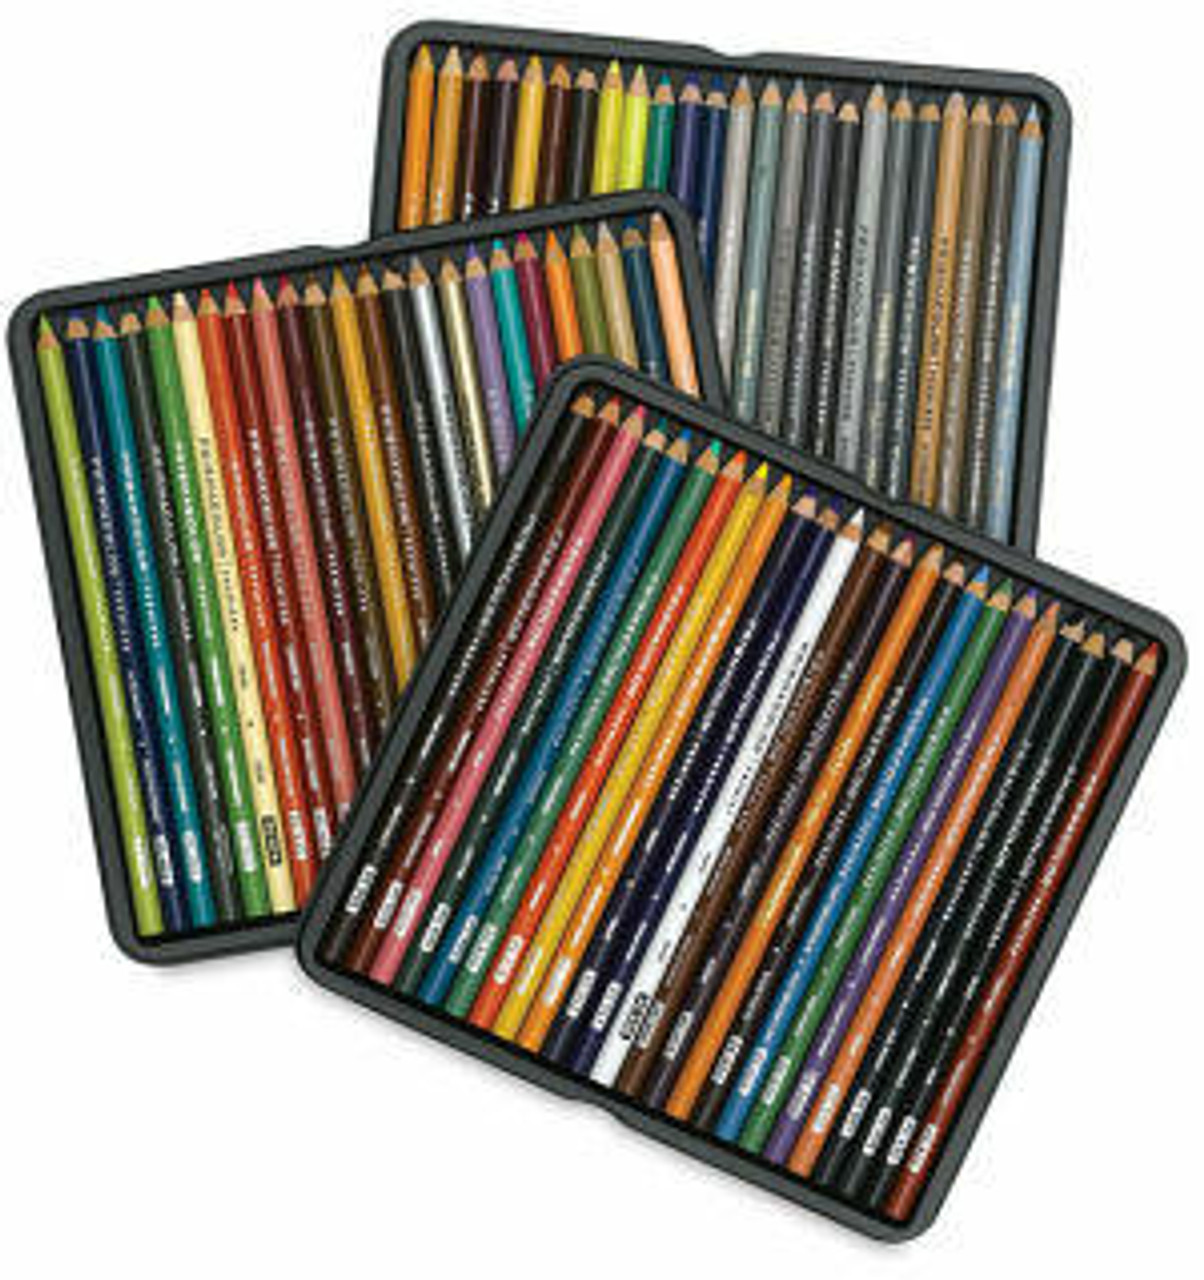 72 Pieces] Prismacolor Premier Soft Core Colored Pencils Set Professi